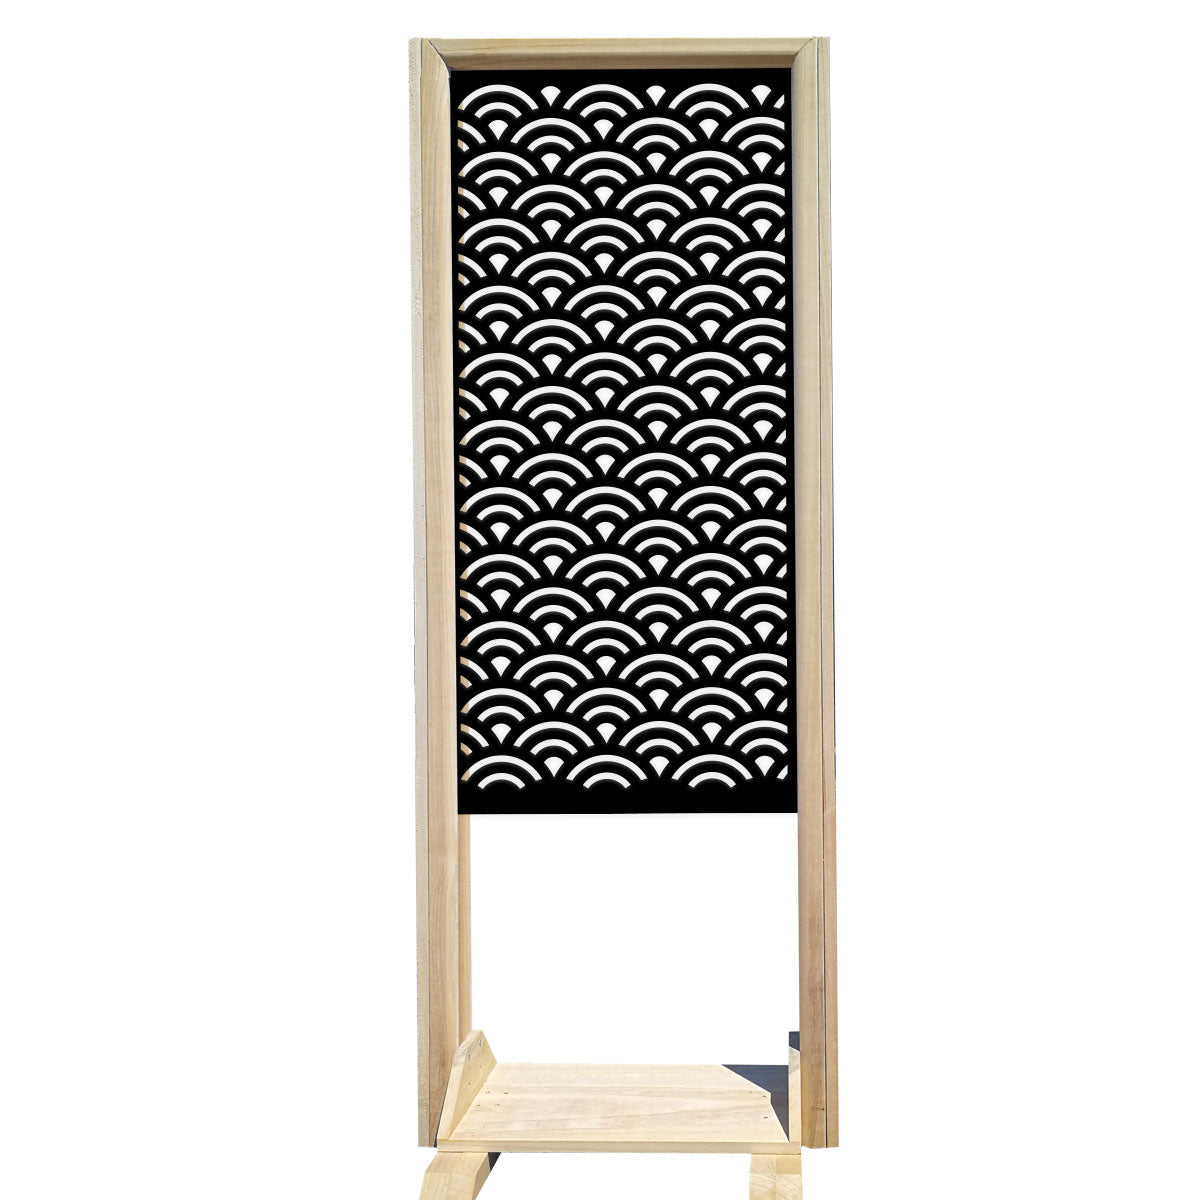 SUNNY - Separè - Paravento modulabile - 70x190cm - in Legno e PVC Colore: nero